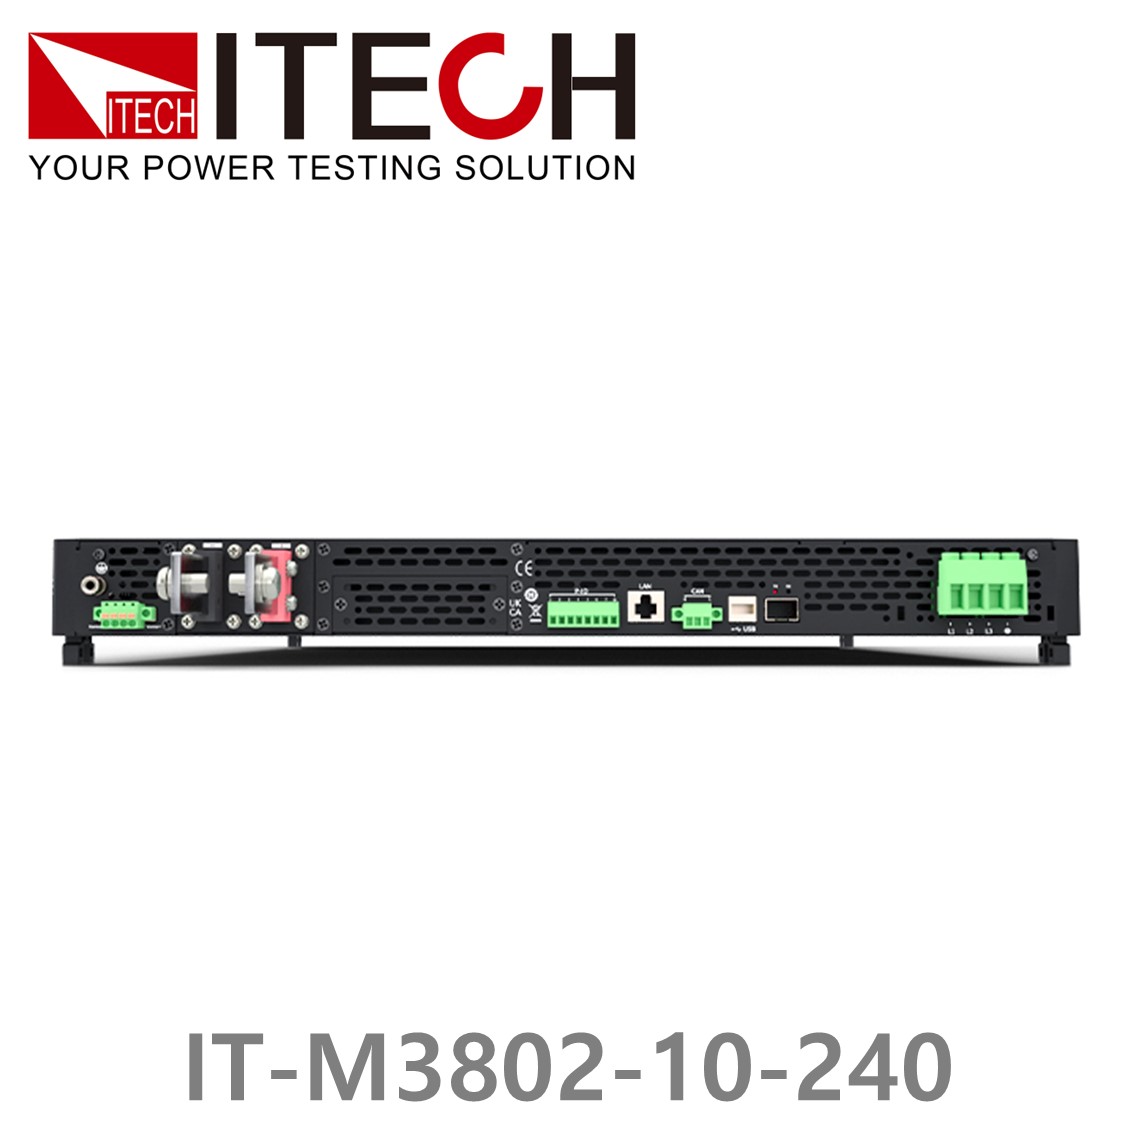 [ ITECH ] IT-M3802-10-240, 10V/4~240A/12~2400W DC 전자로드, DC전자부하기